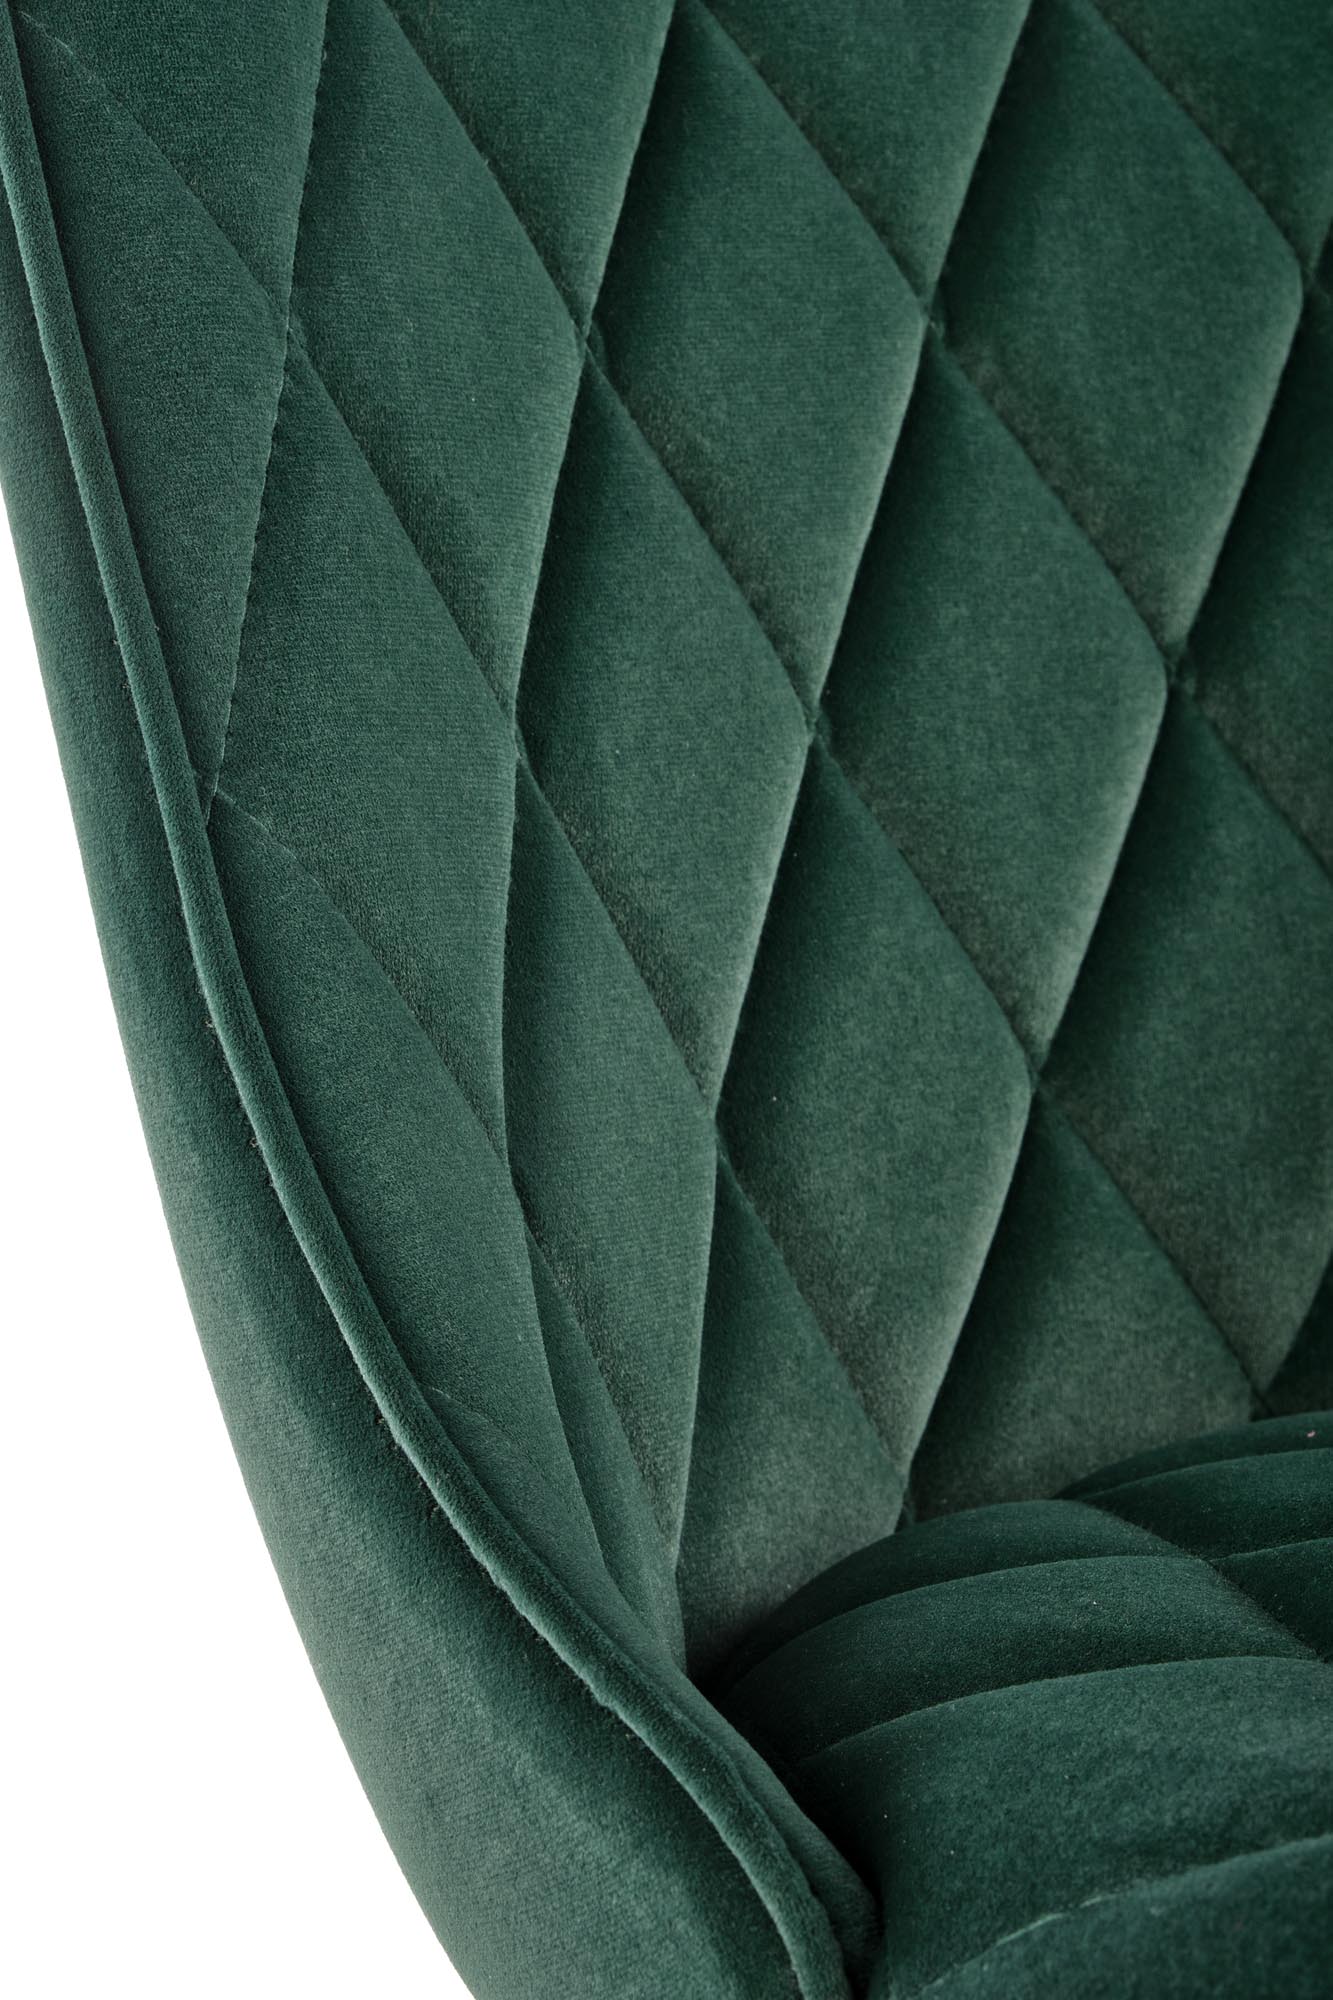 K450 krzesło ciemny zielony k450 krzesło ciemny zielony